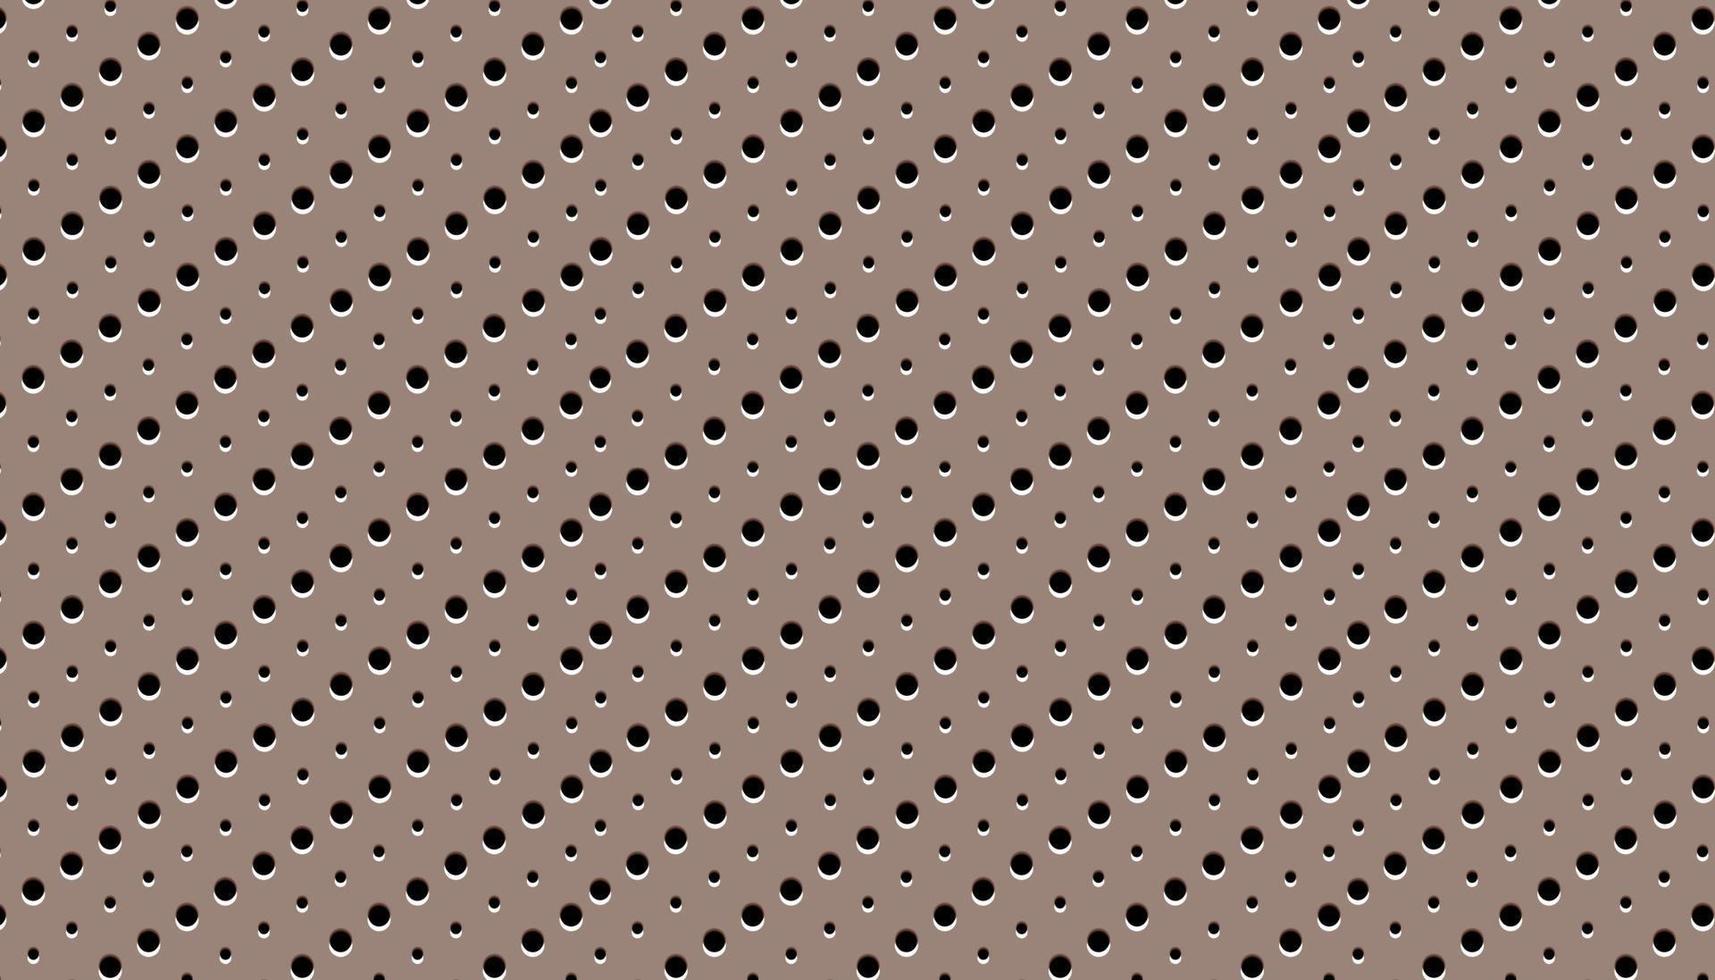 metall perforiertes muster textur mesh hintergrund. vektor